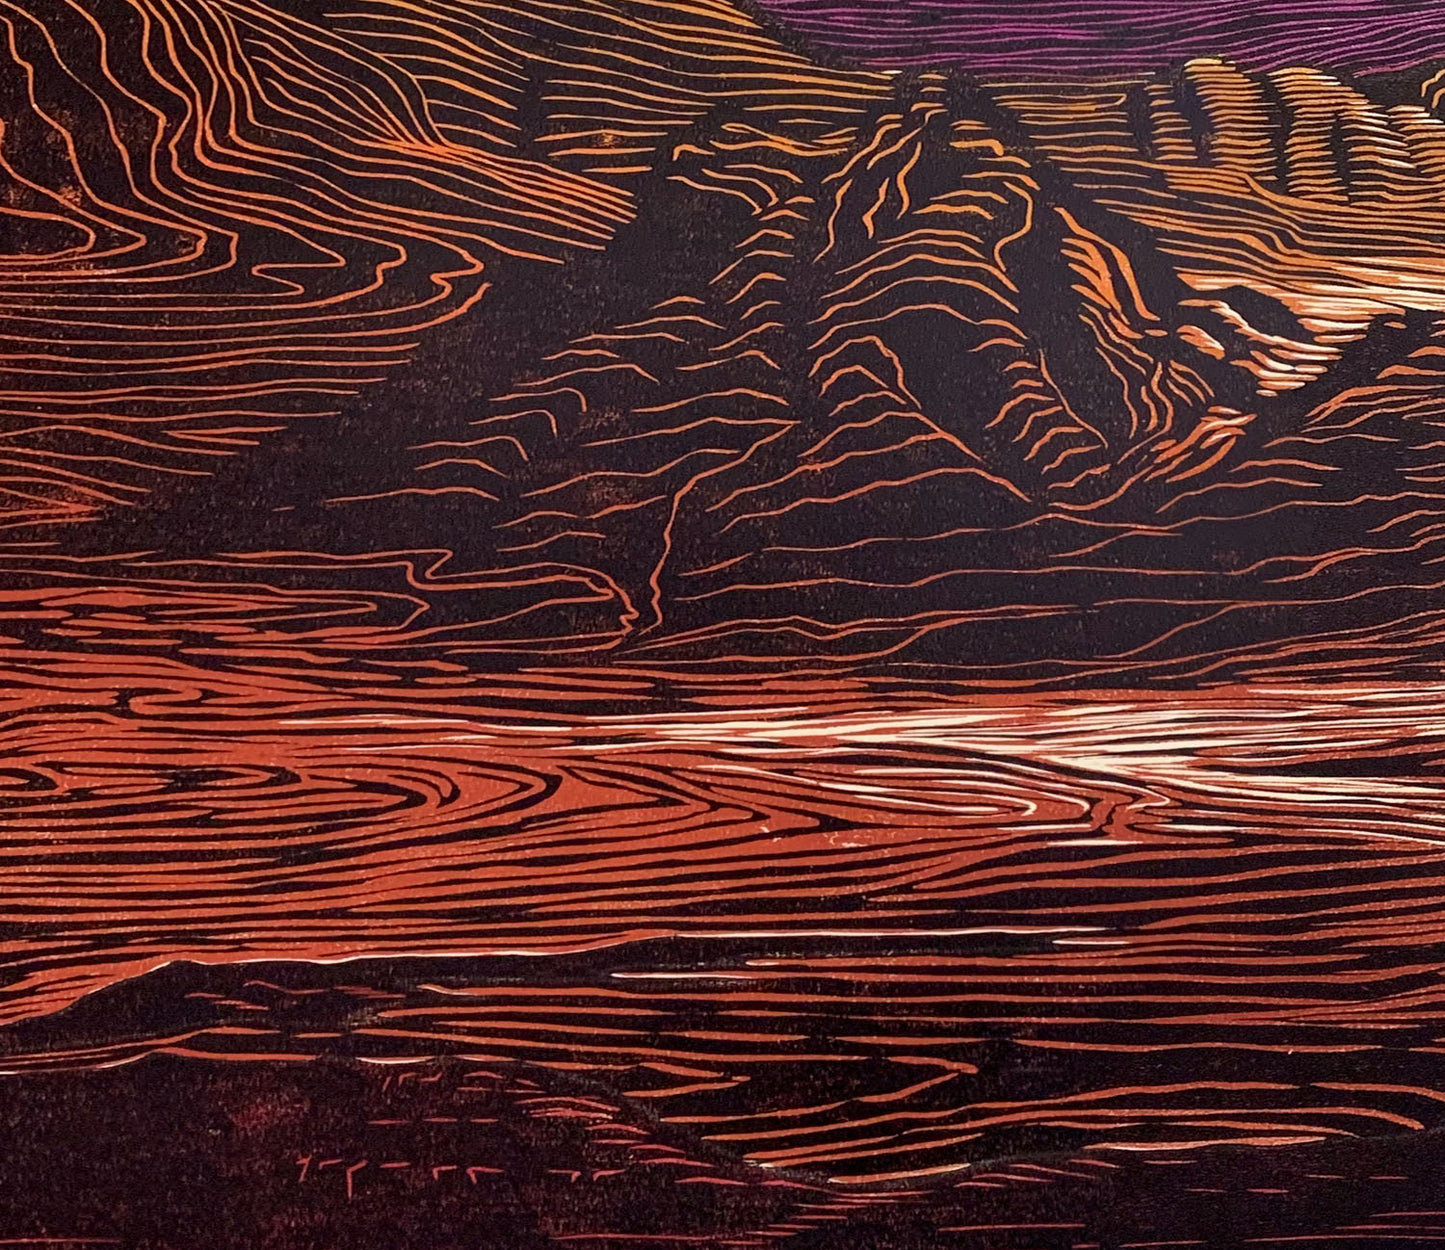 Fine Art Print Call of the Desert Bright Colors Desert Mountain Landscape